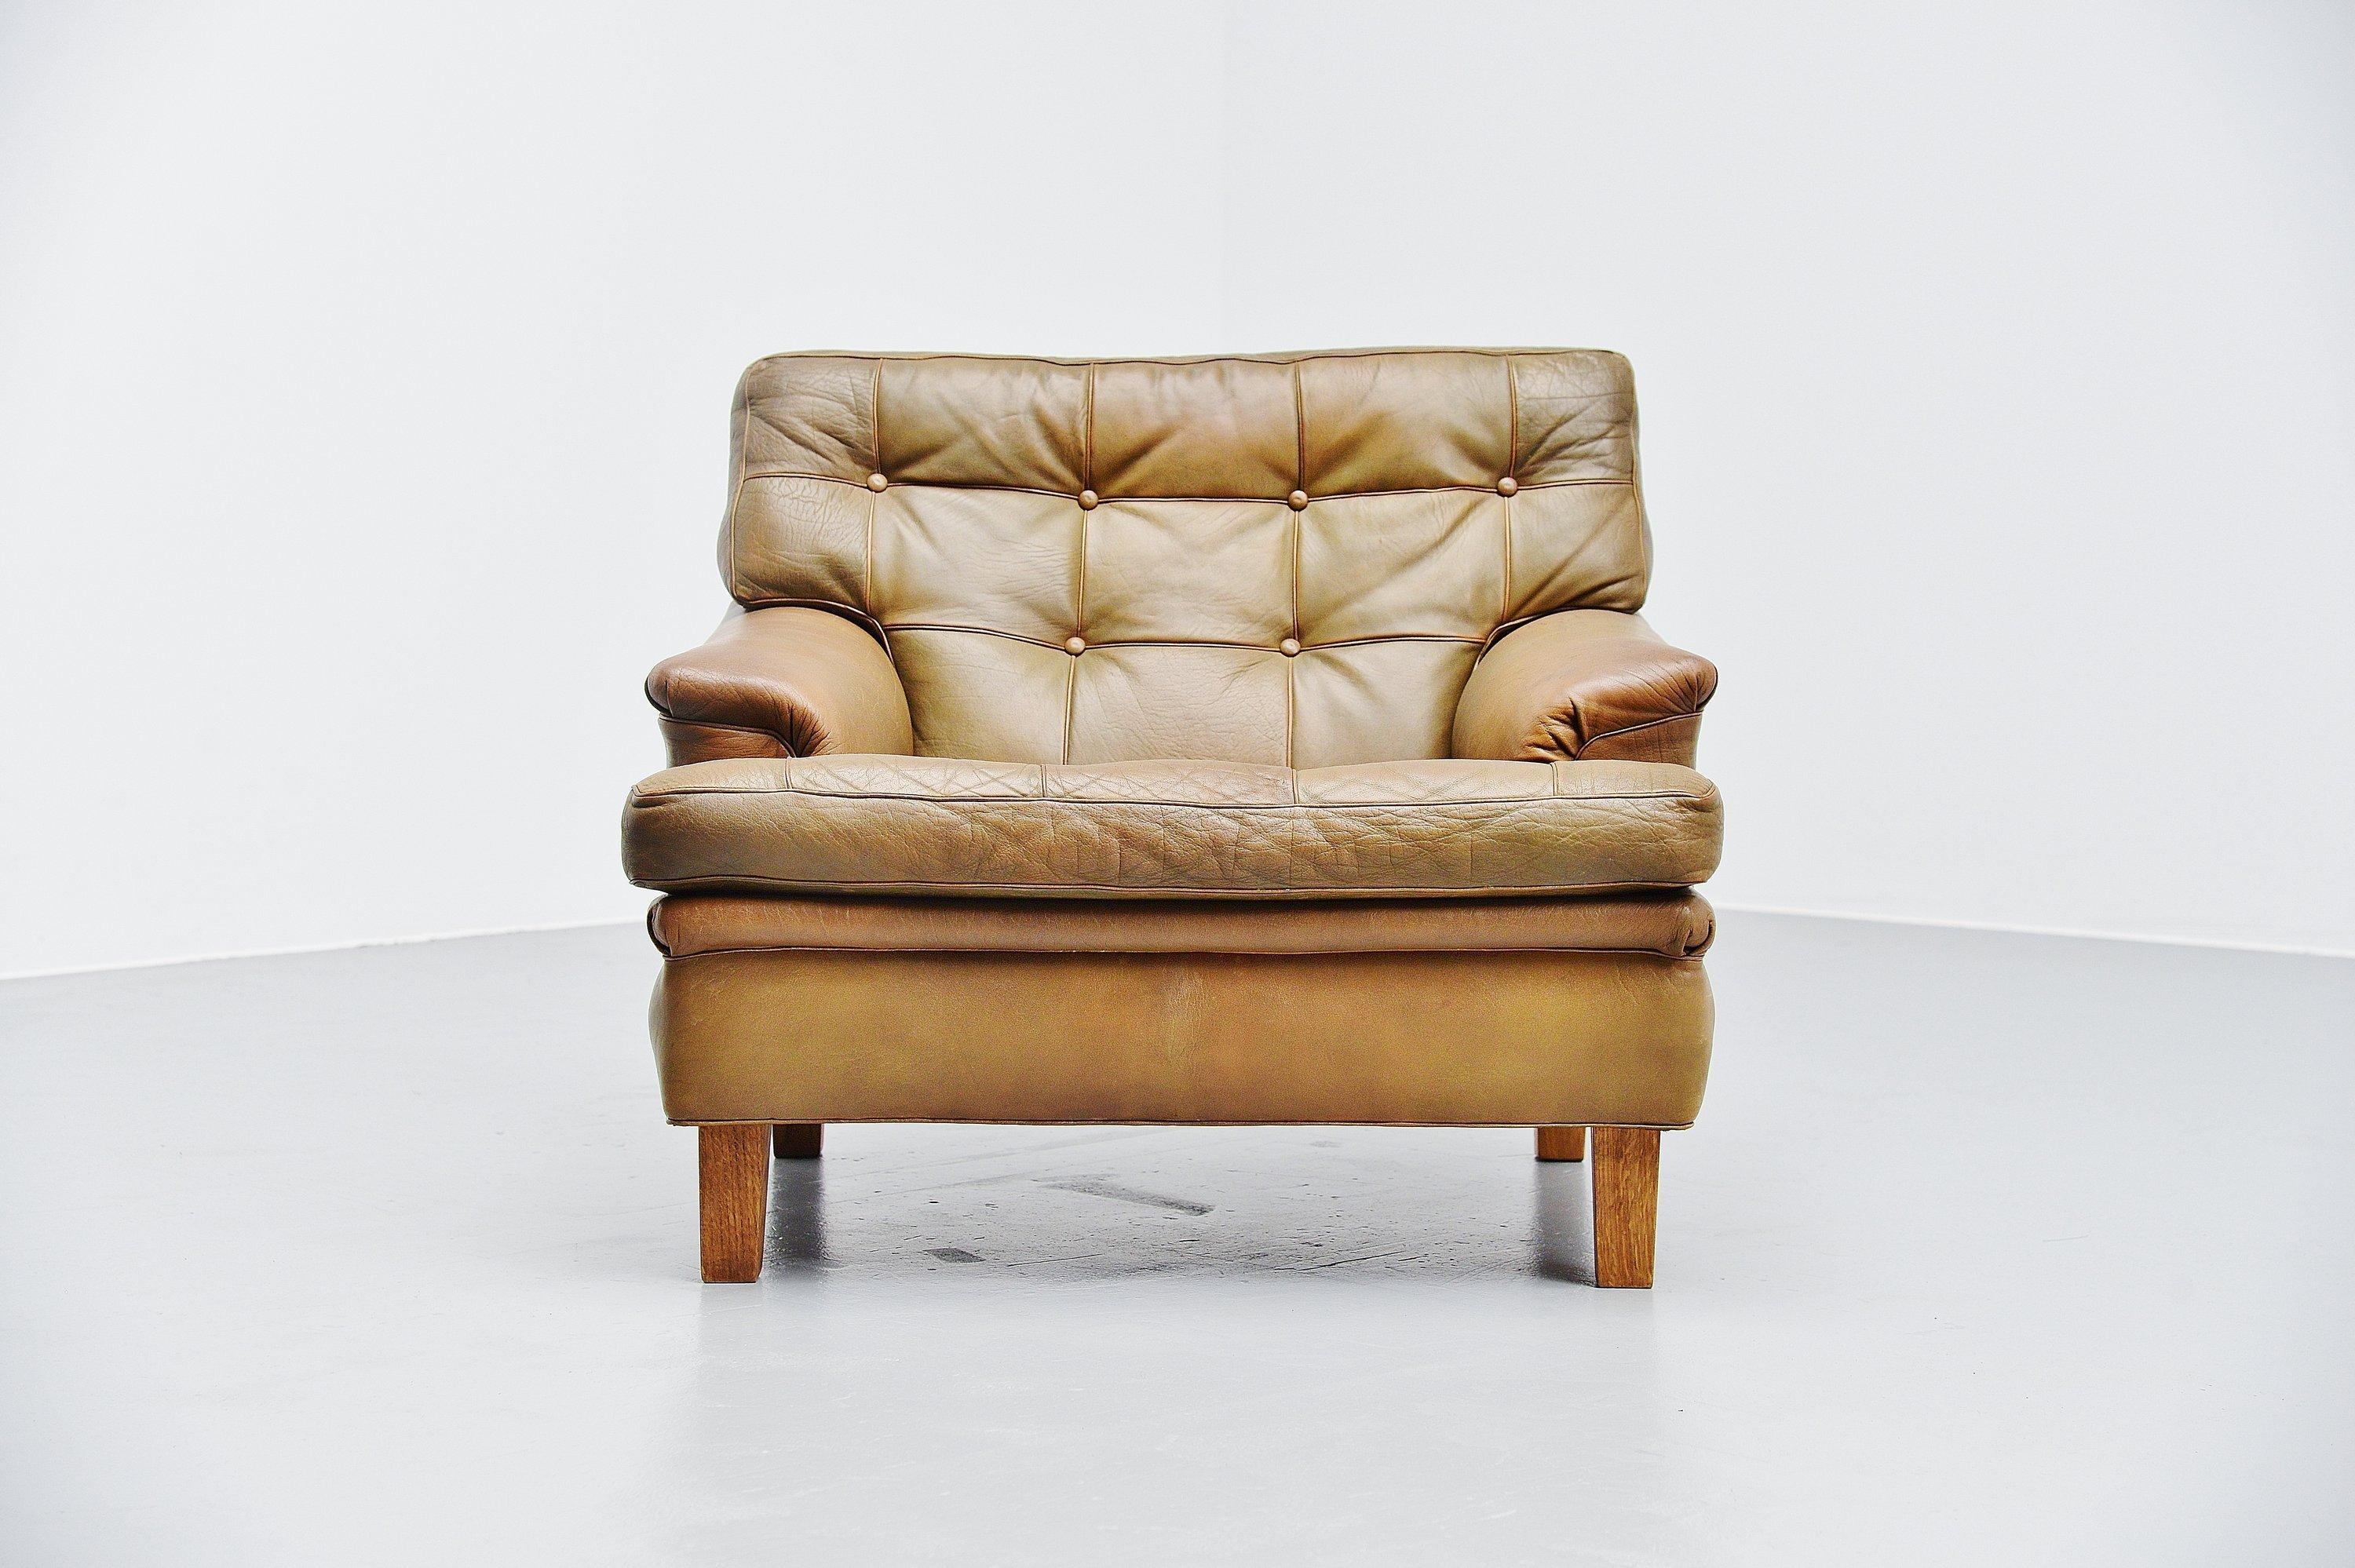 Sehr schöner und bequemer Merkur-Sessel, entworfen von Arne Norell und hergestellt von Arne Norell AB in Aneby, Schweden, 1960. Der Stuhl hat sehr schöne olivgrüne getuftete Lederkissen mit massiven Eichenfüßen. Der Stuhl sitzt sehr bequem, es ist